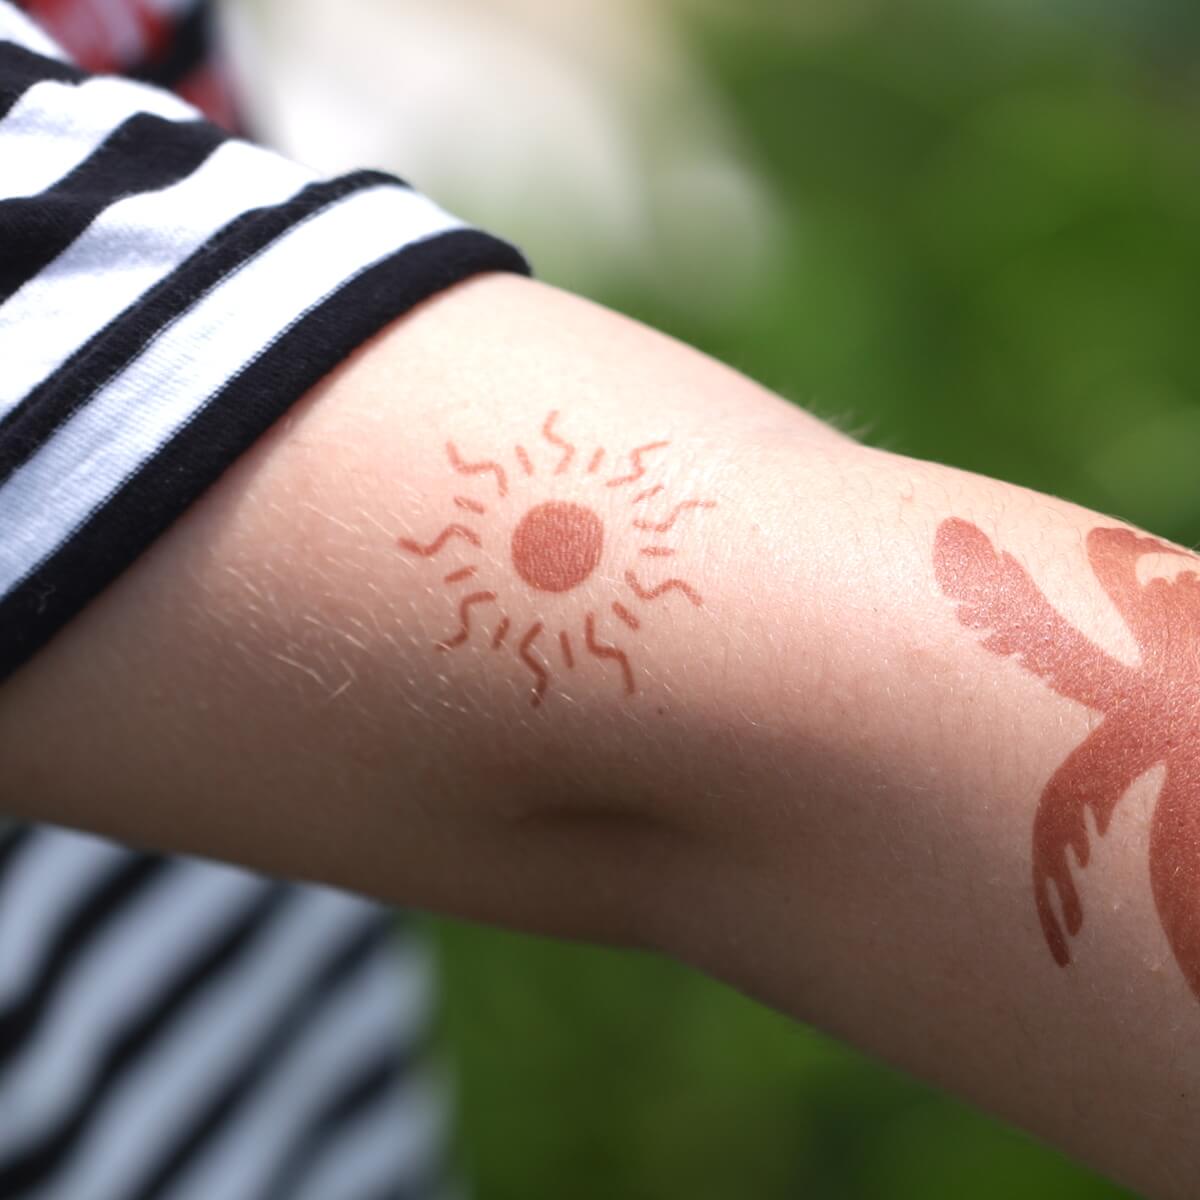 Sun - temporary tattoo of the sun on arm